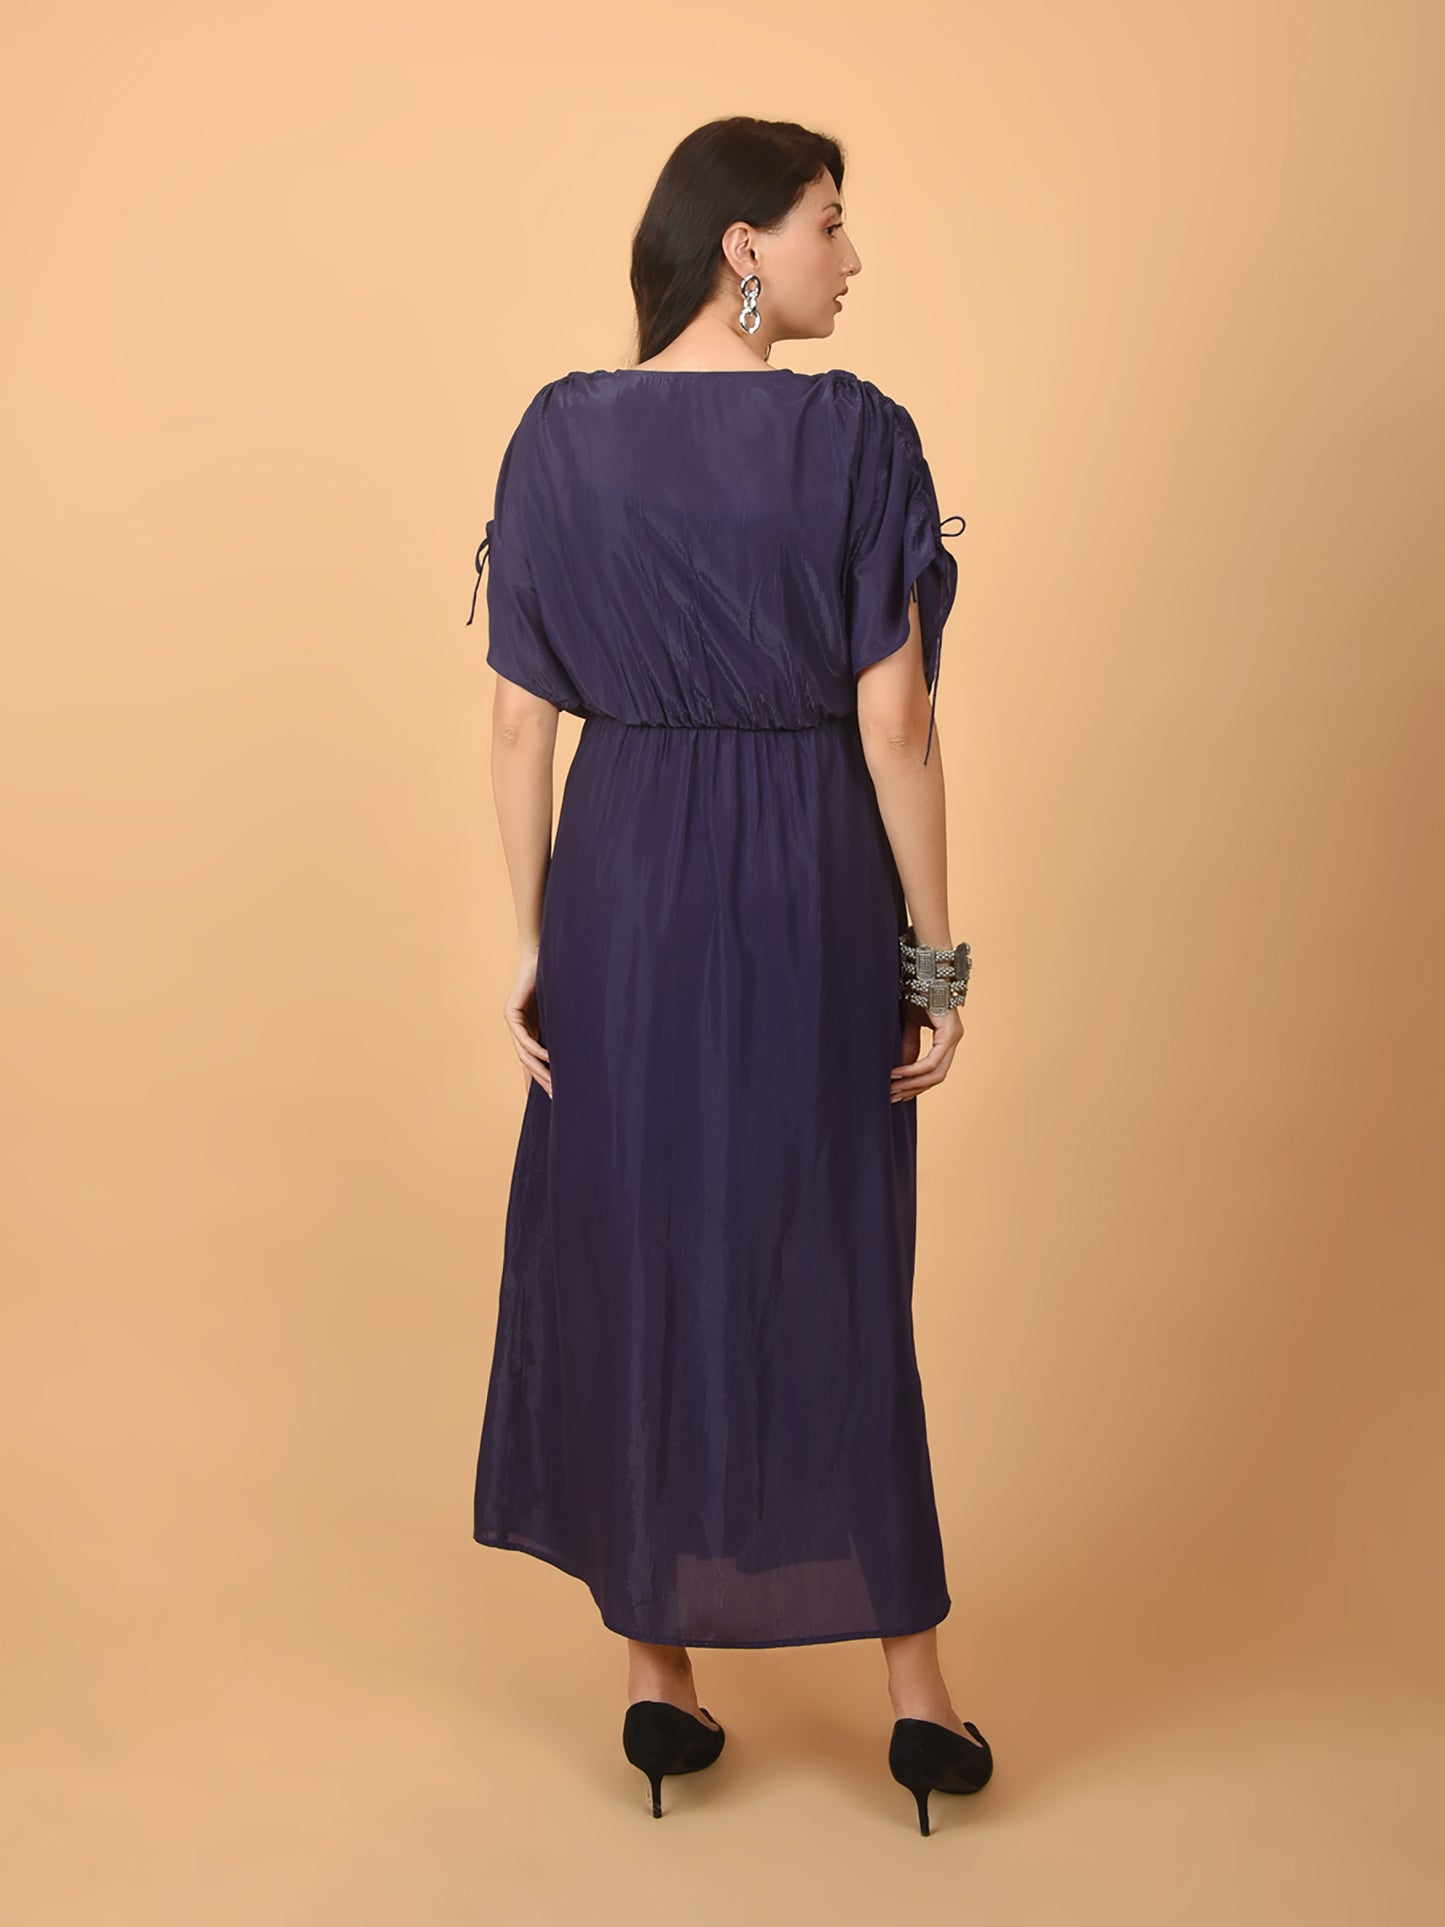 Flawless Women Solid Purple Dress | BEKKY Being Flawless